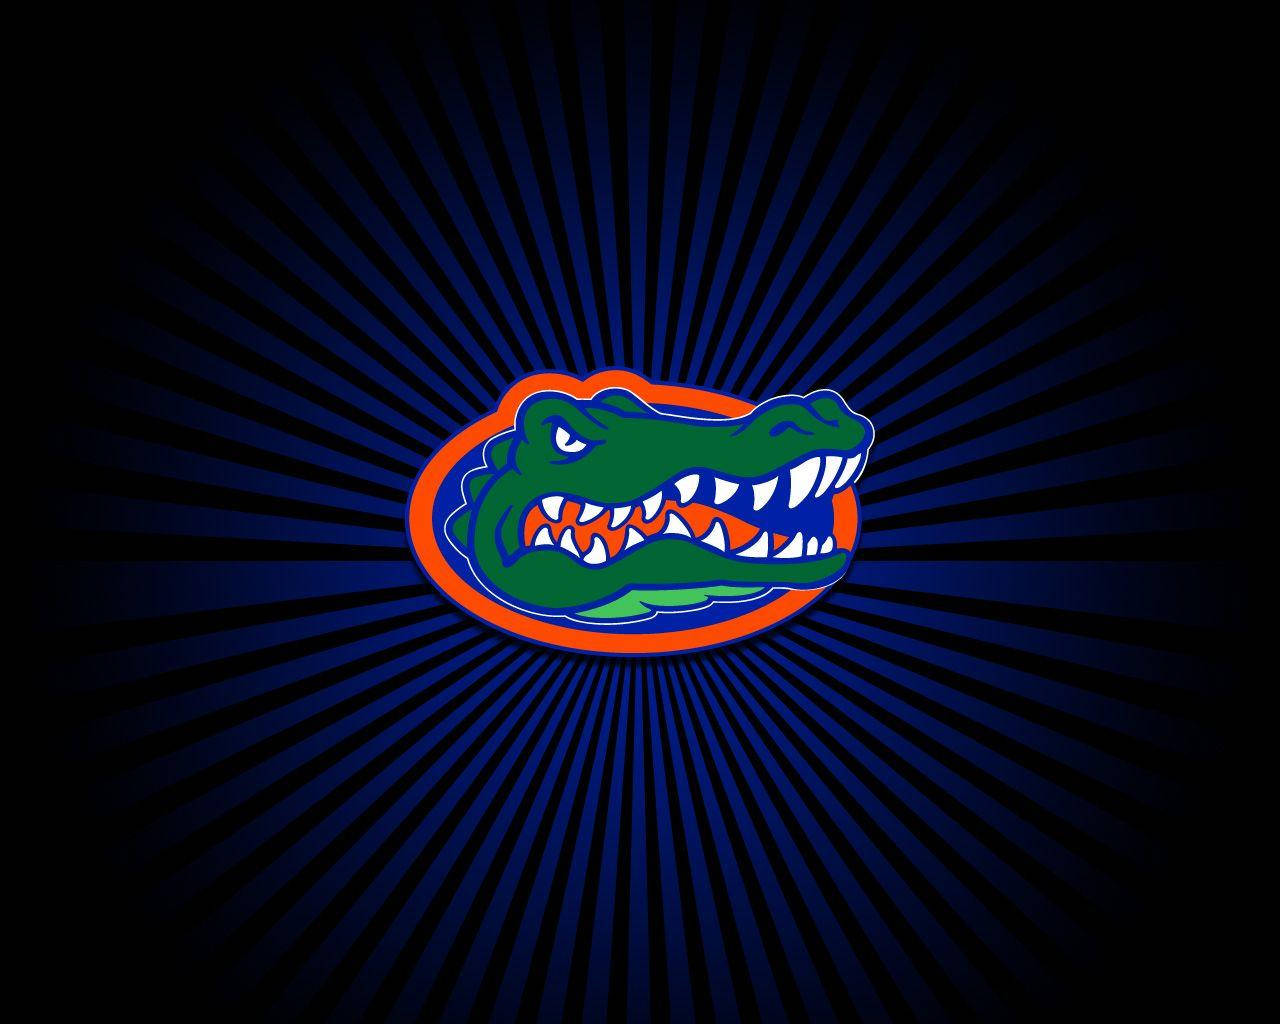 University Of Florida Gators With Rays Background